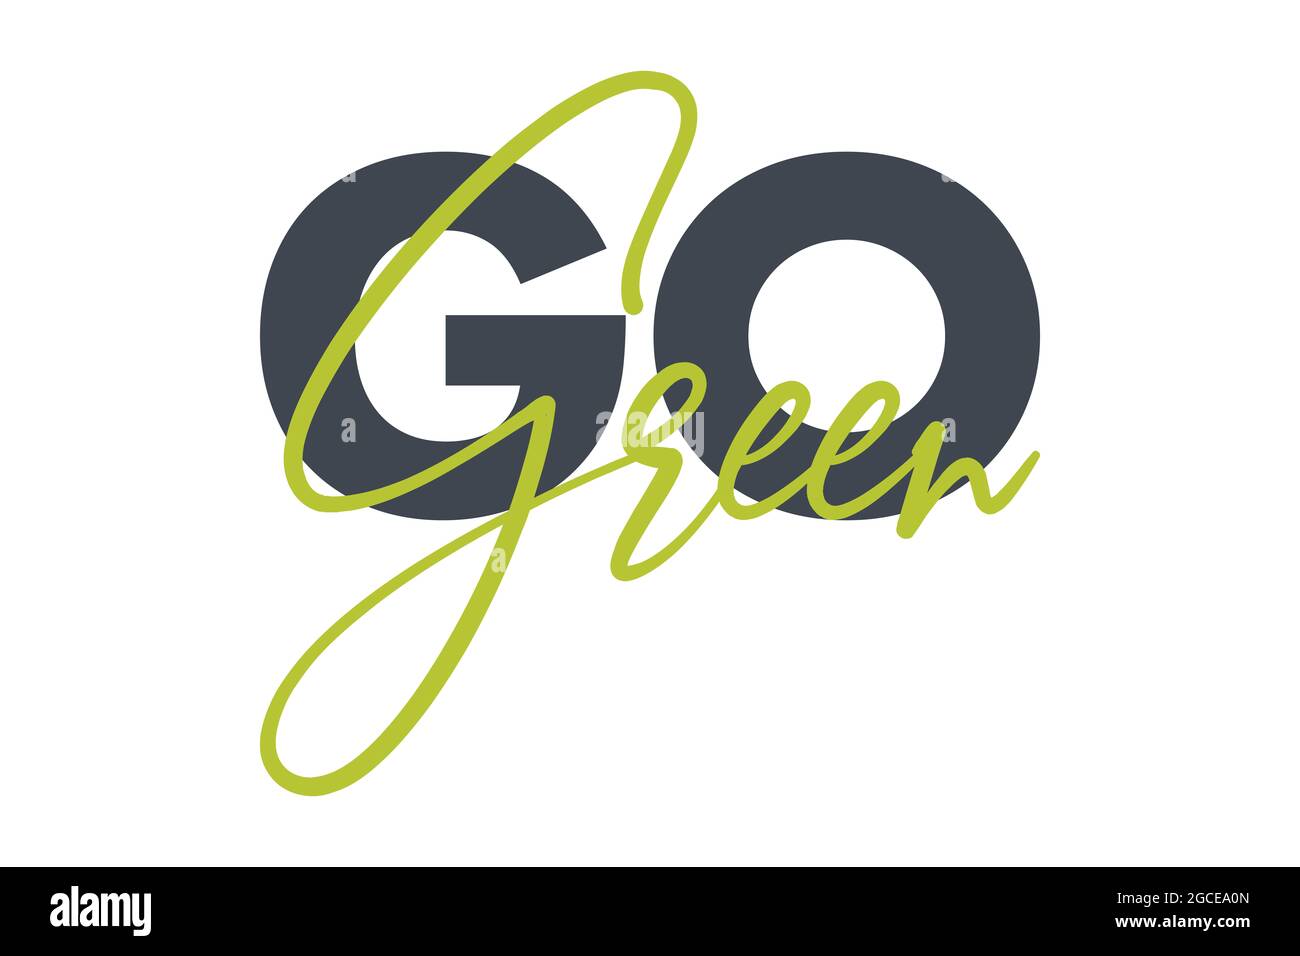 Un motif typographique moderne, simple et audacieux qui dit « Go Green » en vert et en gris foncé. Art vectoriel graphique urbain, cool, tendance et ludique Banque D'Images